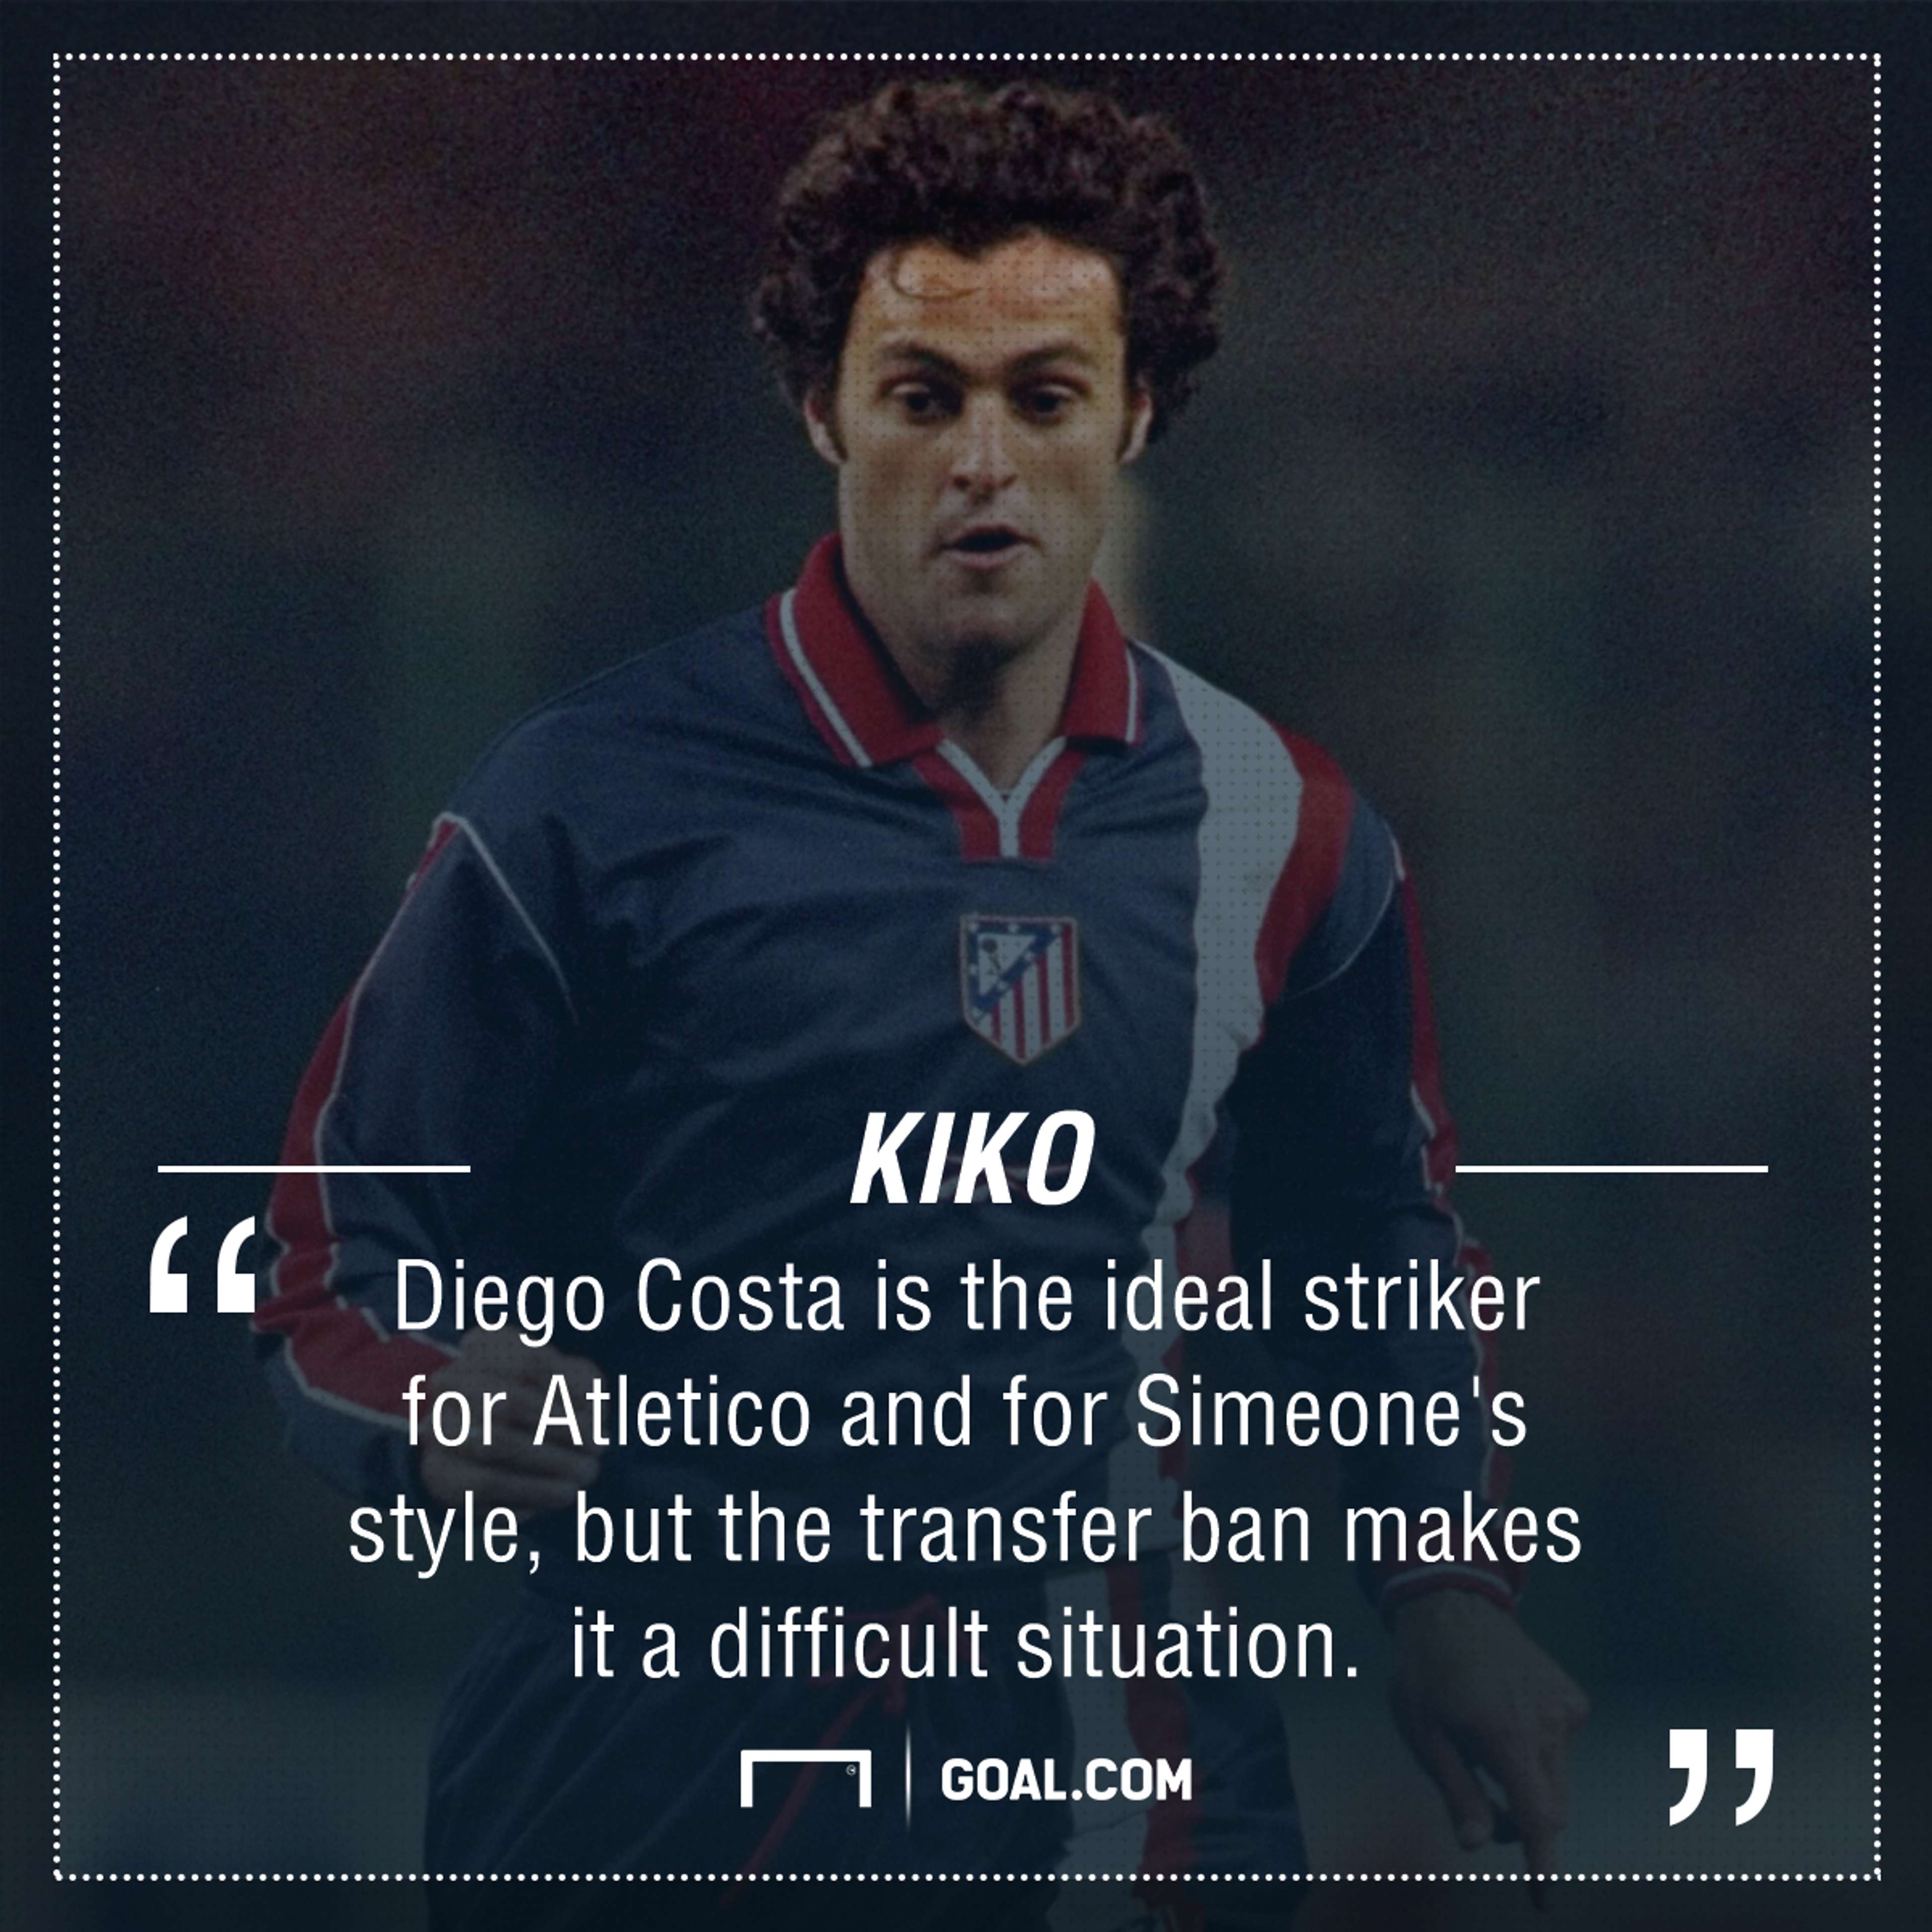 Kiko Diego Costa quote